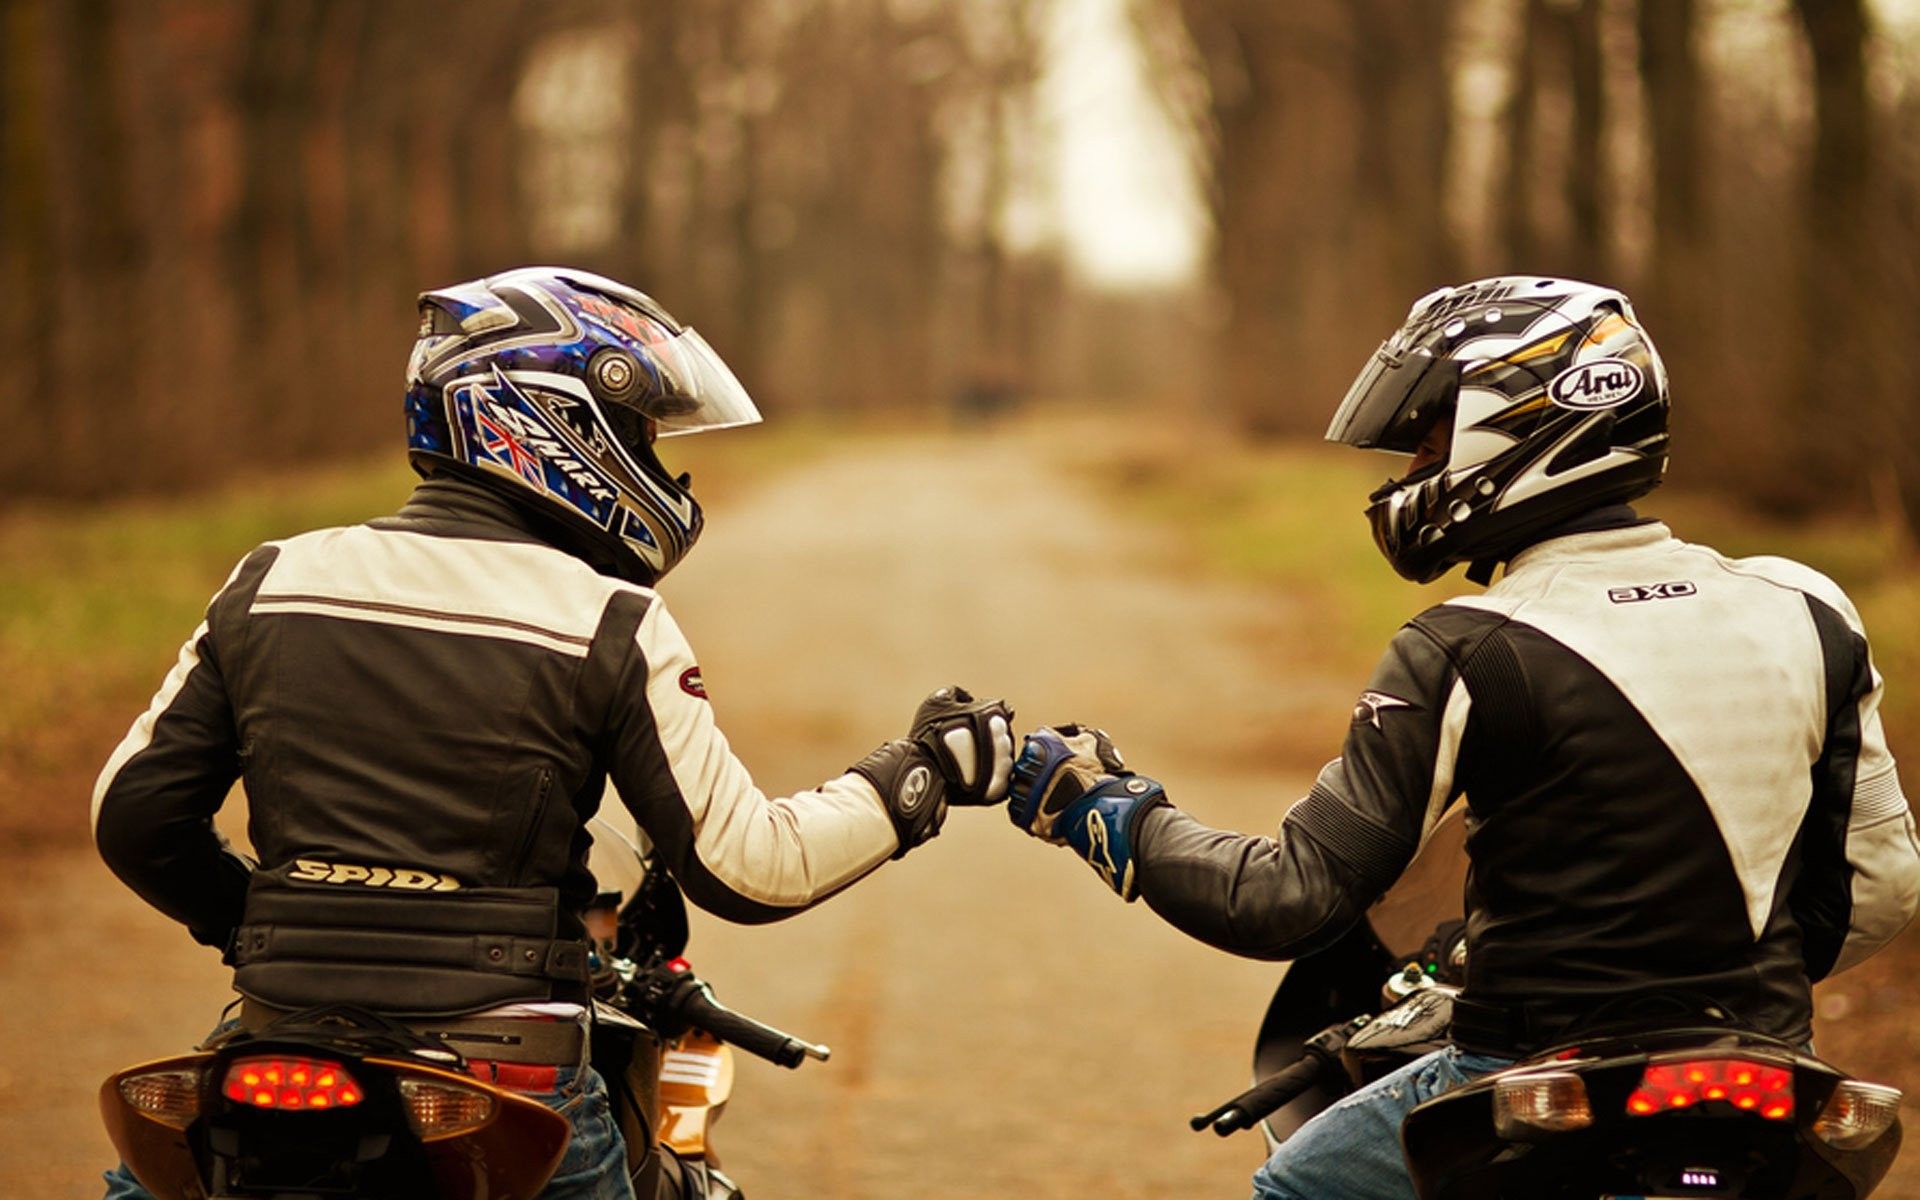 Мотоциклисты друзья